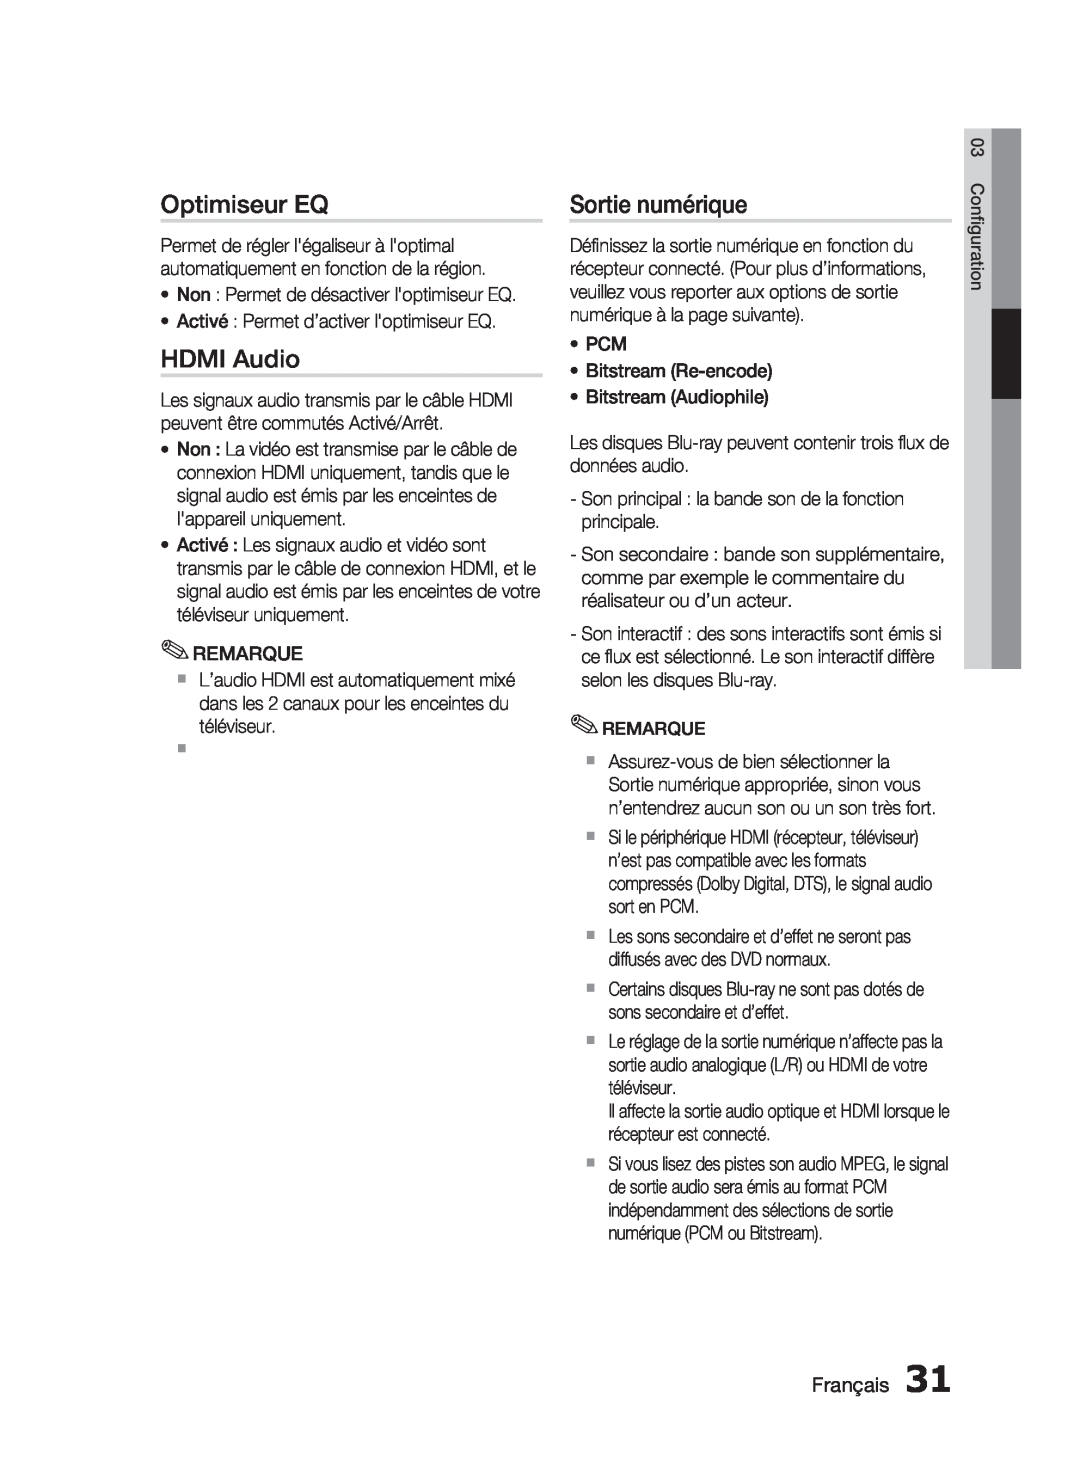 Samsung HT-C6200/XEF manual Optimiseur EQ, HDMI Audio, Sortie numérique, Français 